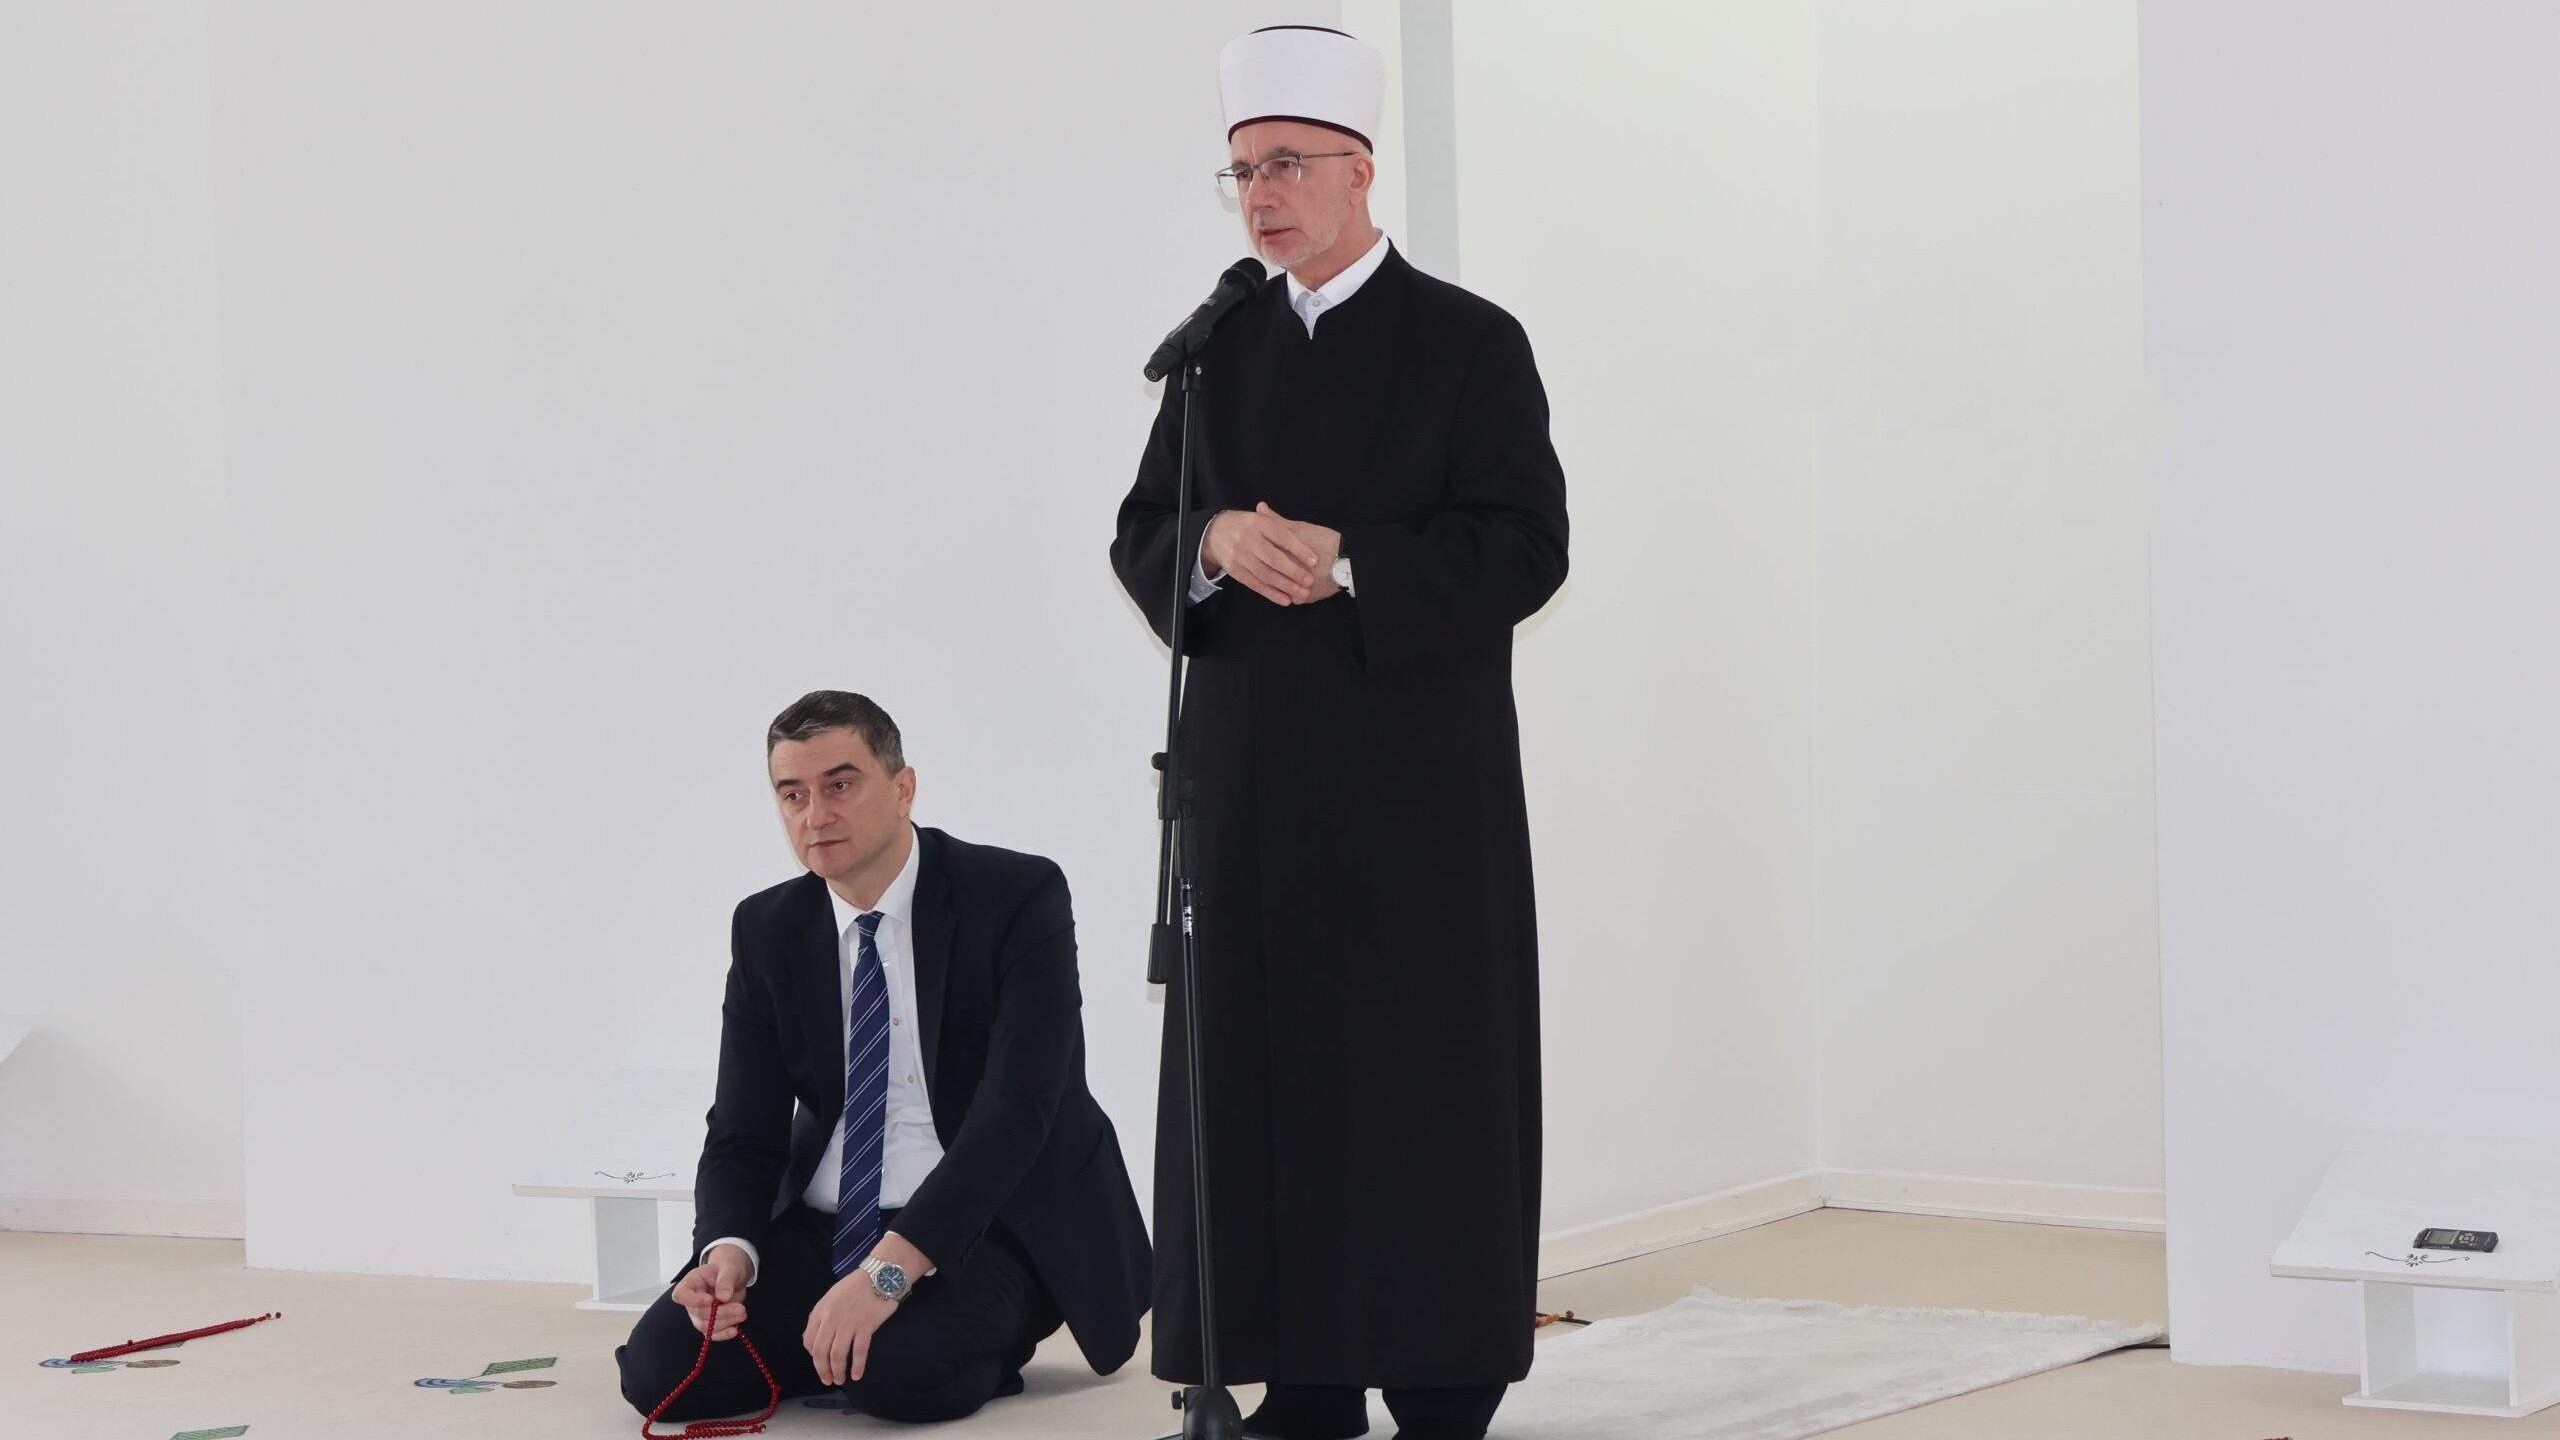 Predramazanski susret muftije Fazlovića s učenicima i profesorima Behram-begove medrese 